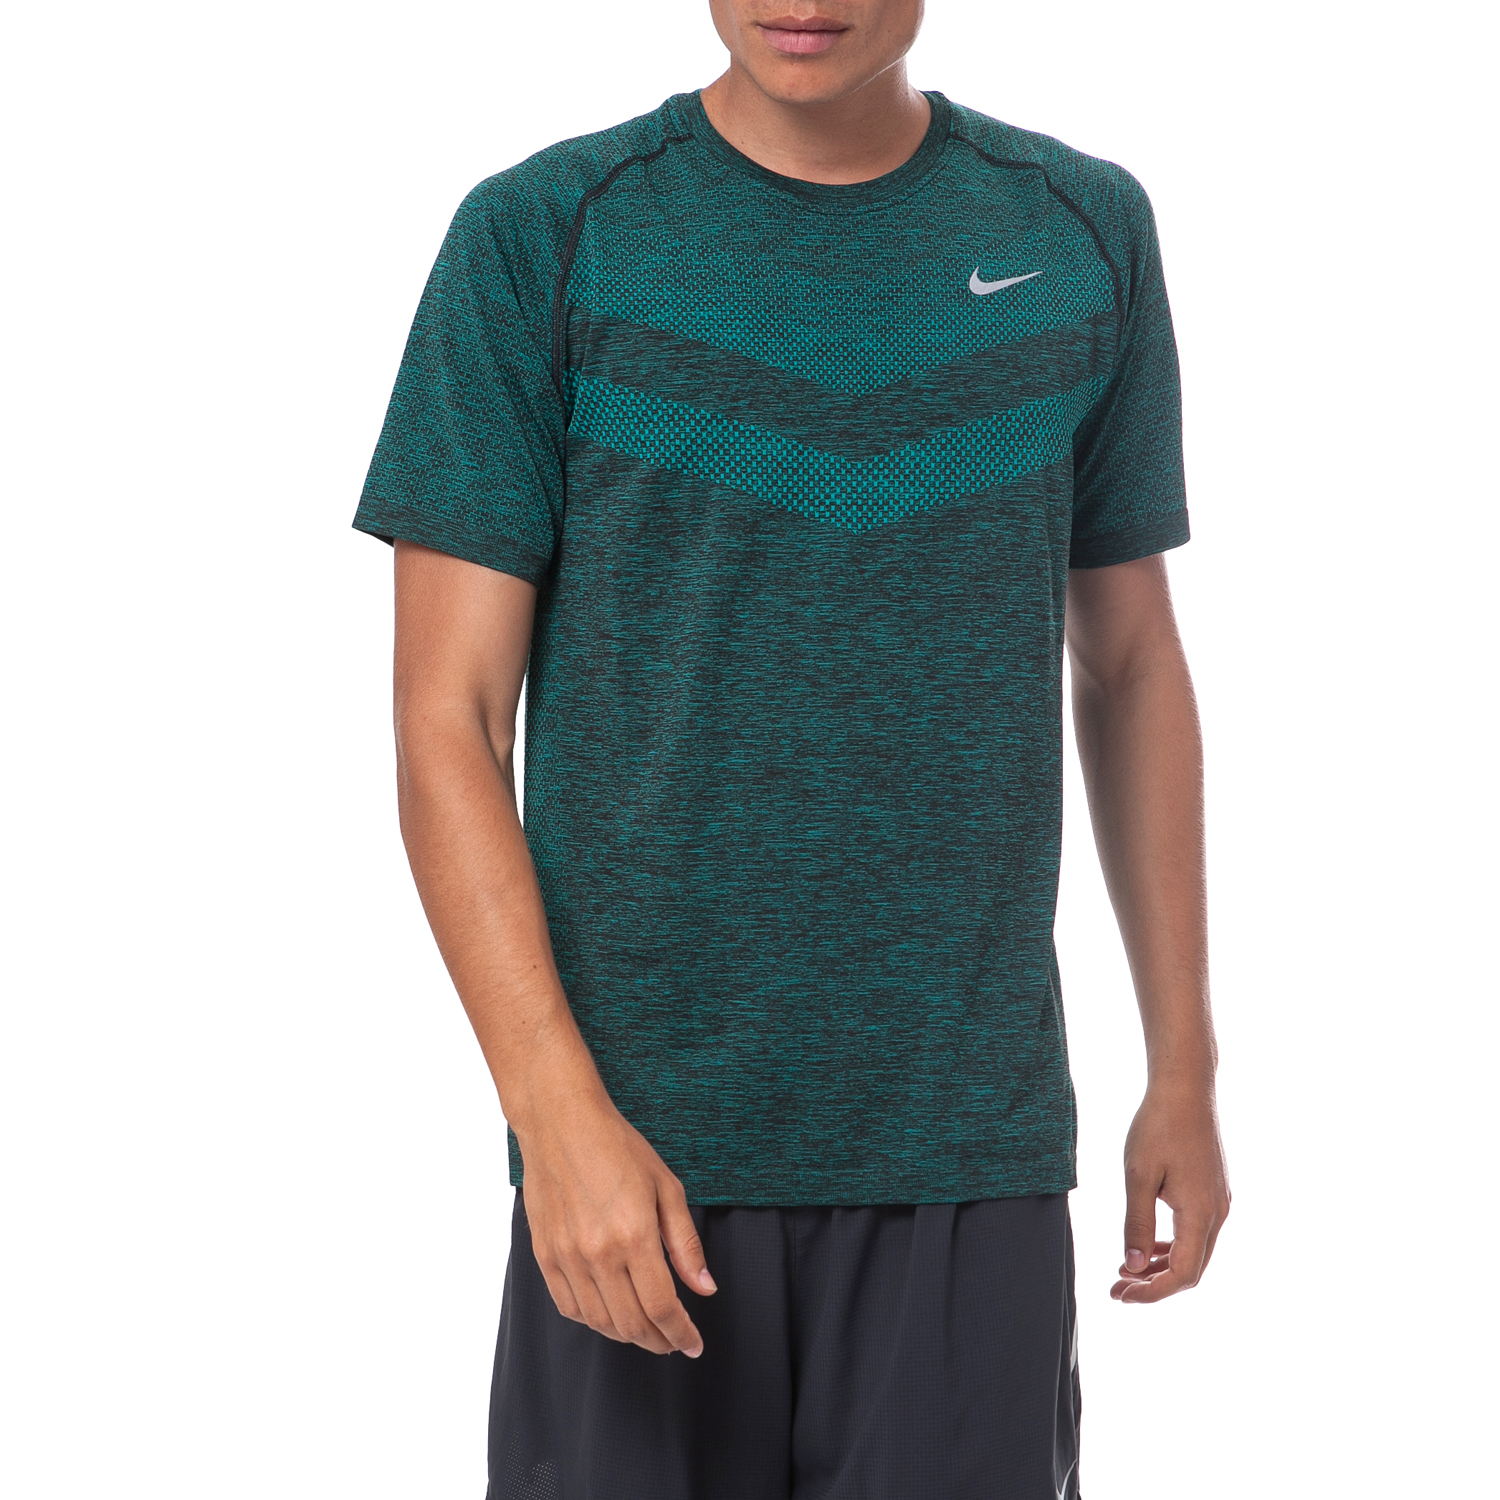 Ανδρικά/Ρούχα/Αθλητικά/T-shirt NIKE - Ανδρική μπλούζα Nike πράσινη